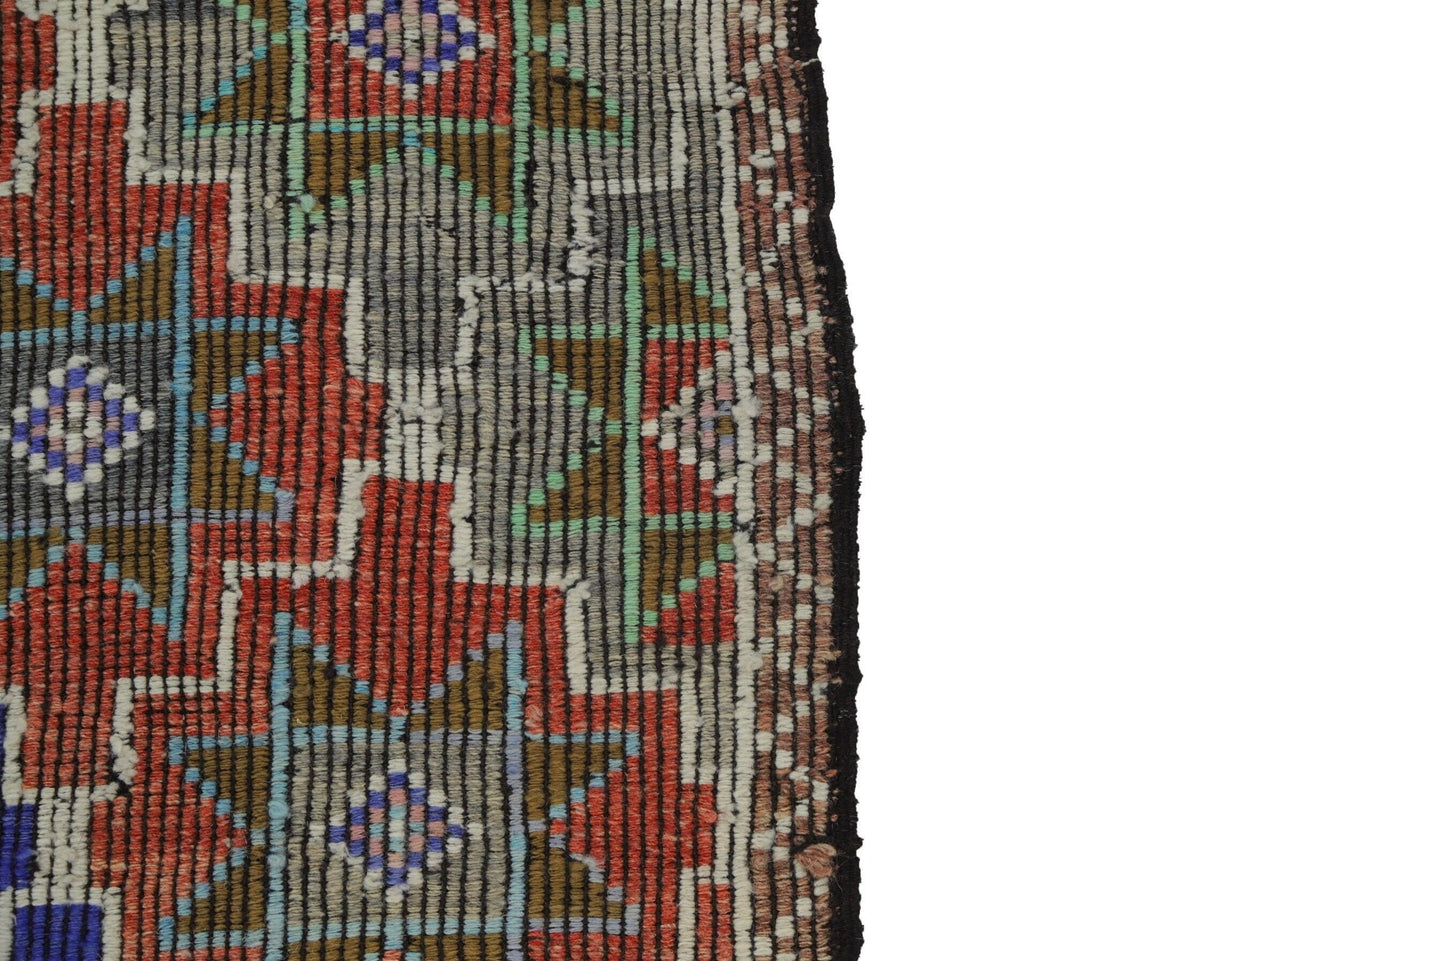 Kilim Rug 5x12, Handmade Antique Kilim Rug, Area Kilim Rug, Vintage Eclectic Kilim Rug, Bedroom Rug, Bohemian Rug, Turkish Kilim Rug, 8136